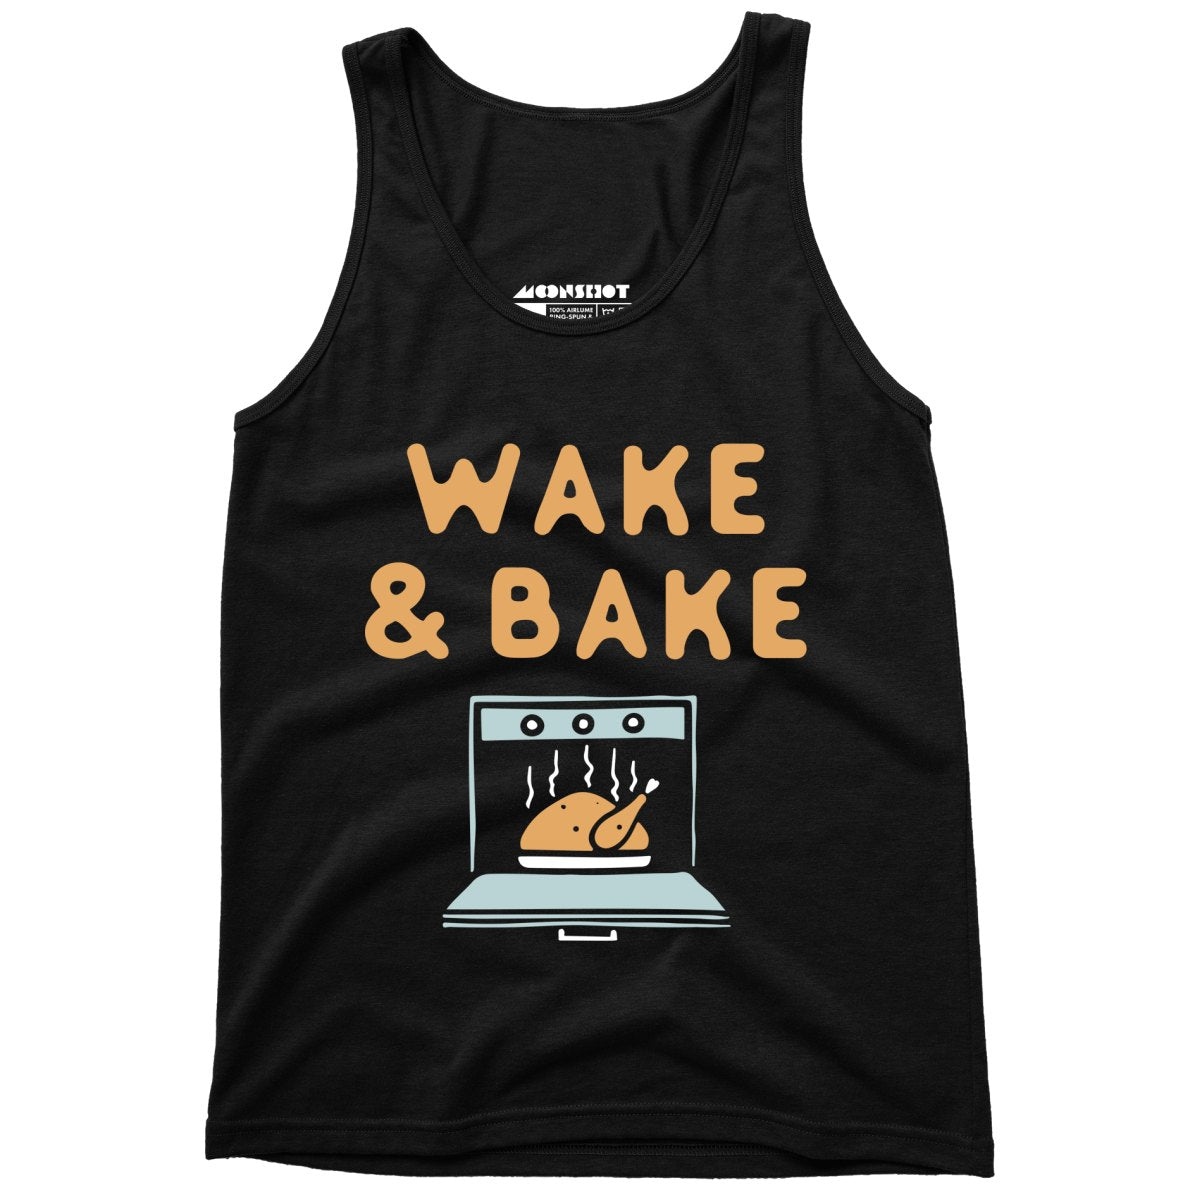 Wake & Bake - Unisex Tank Top